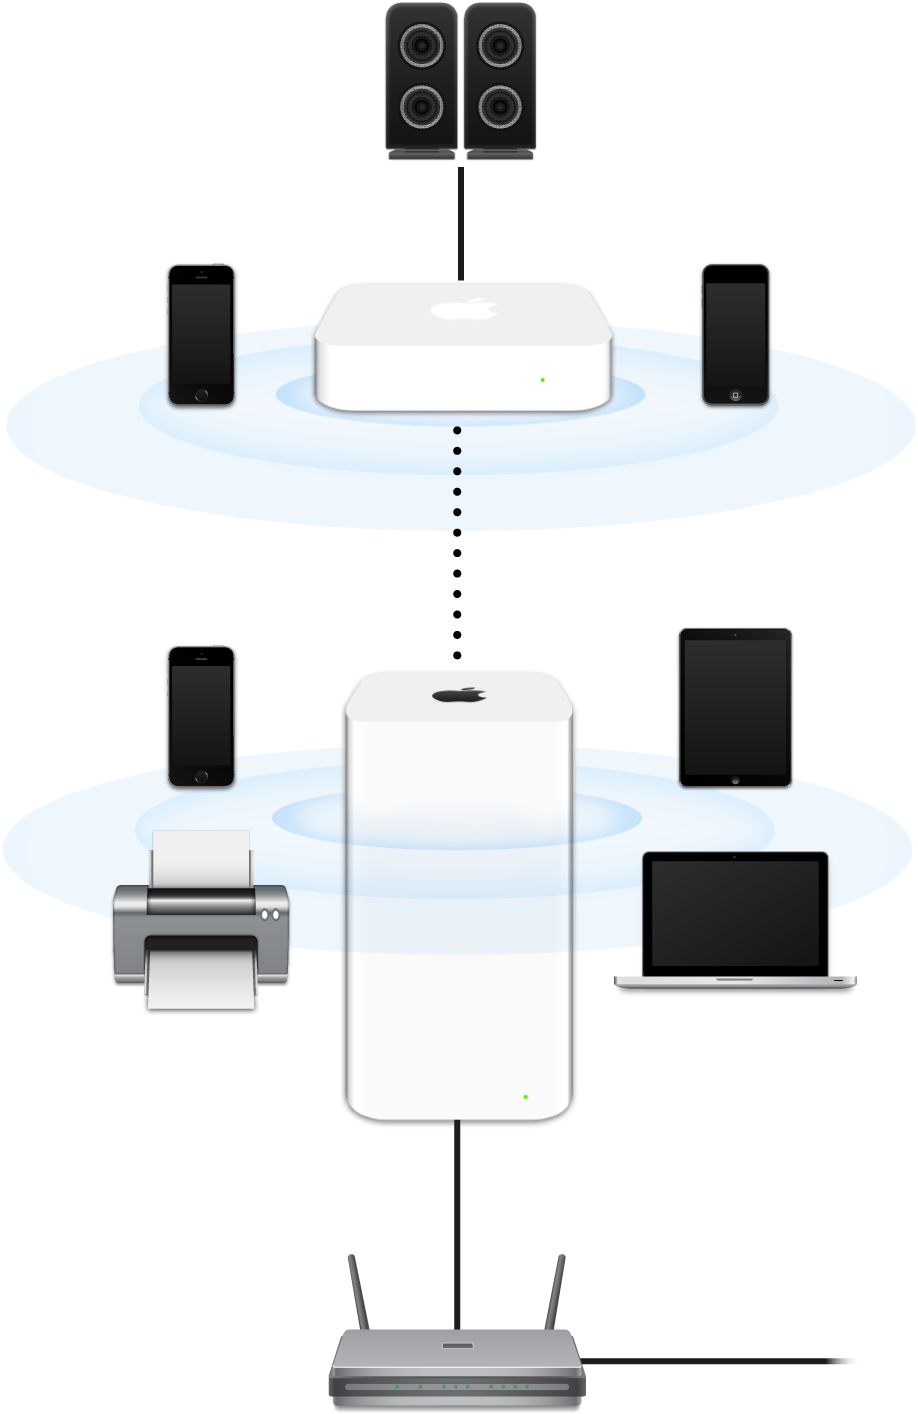 Расширенная сеть, включающая в себя базовые станции AirPort Extreme и AirPort Express, подключенные к модему и передающие сигнал на различные устройства.